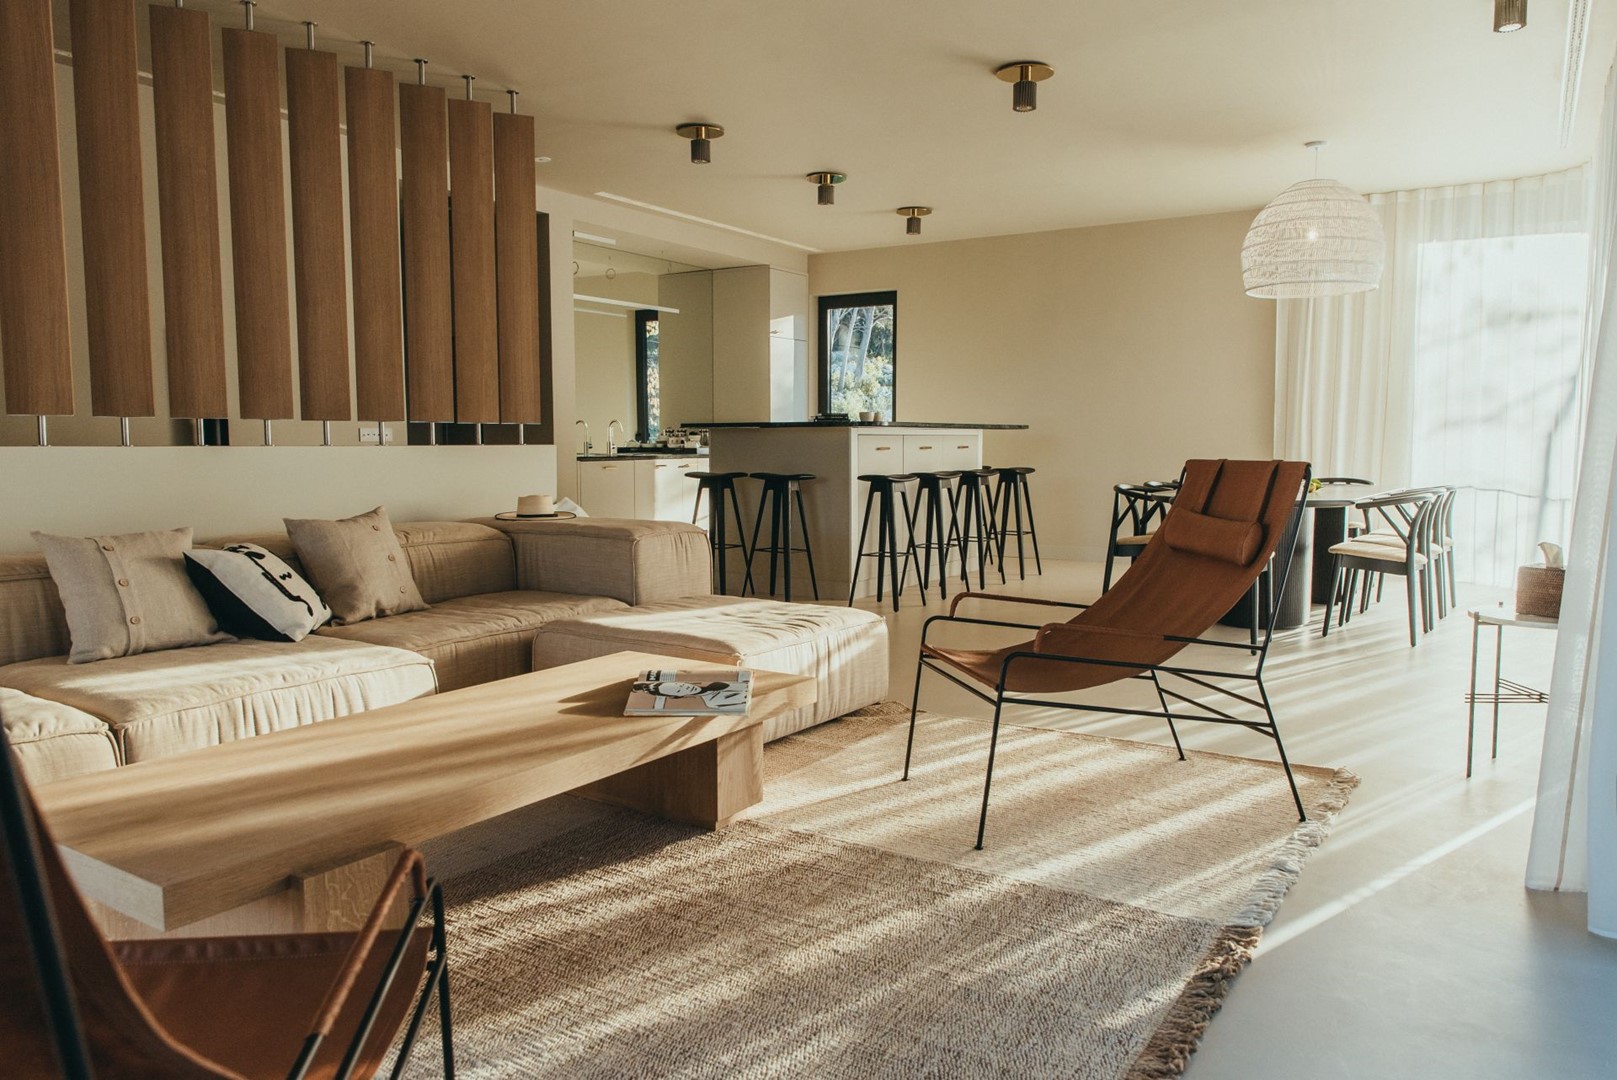 Komfortabler Sitzbereich in einem Wohnzimmer einer haustierfreundlichen Luxusvilla in Kroatien für einen Familienurlaub auf der Insel Hvar